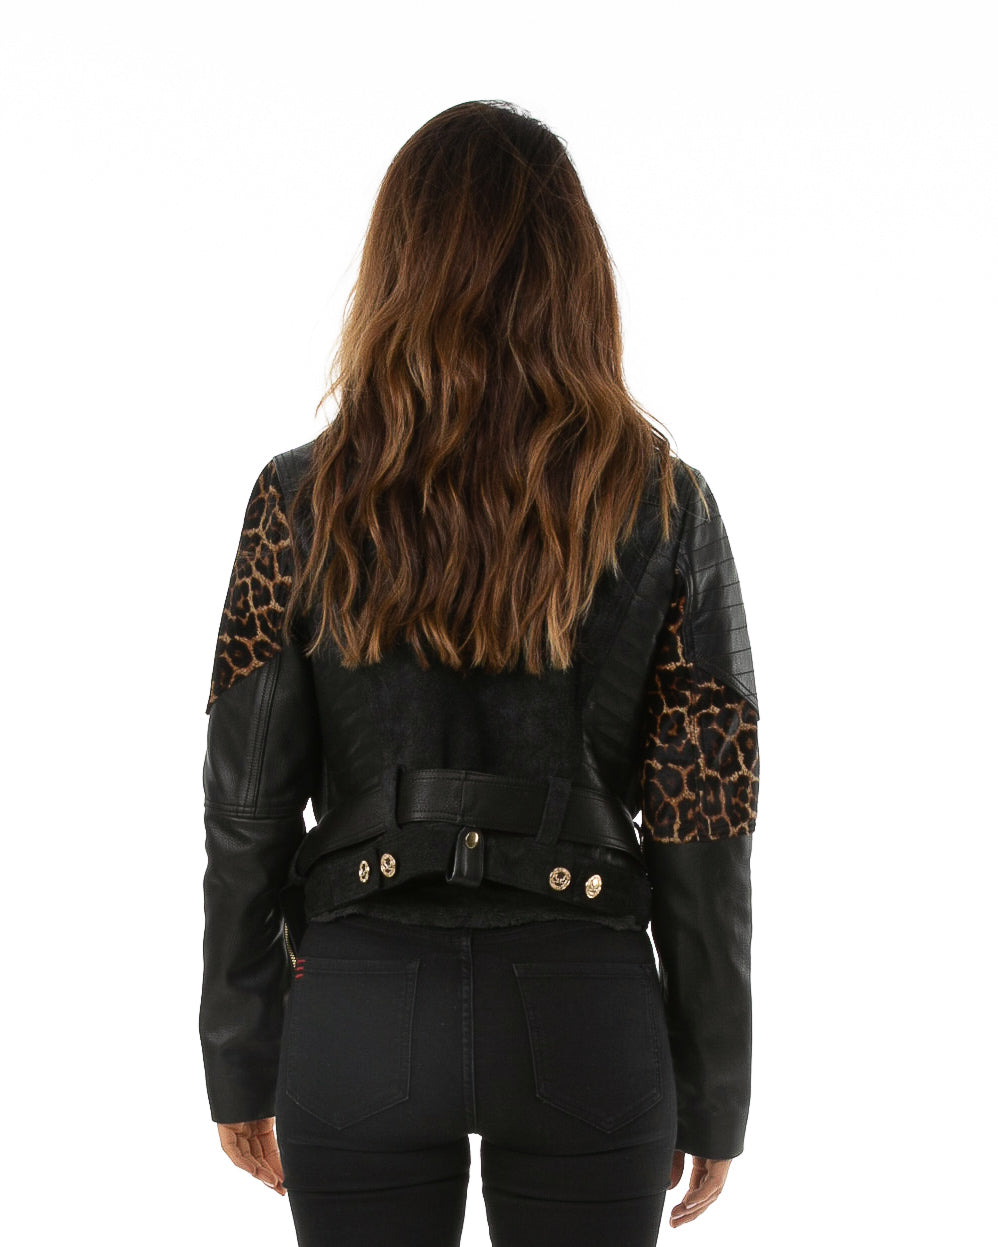 Backside of female model wearing Papi leather jacket